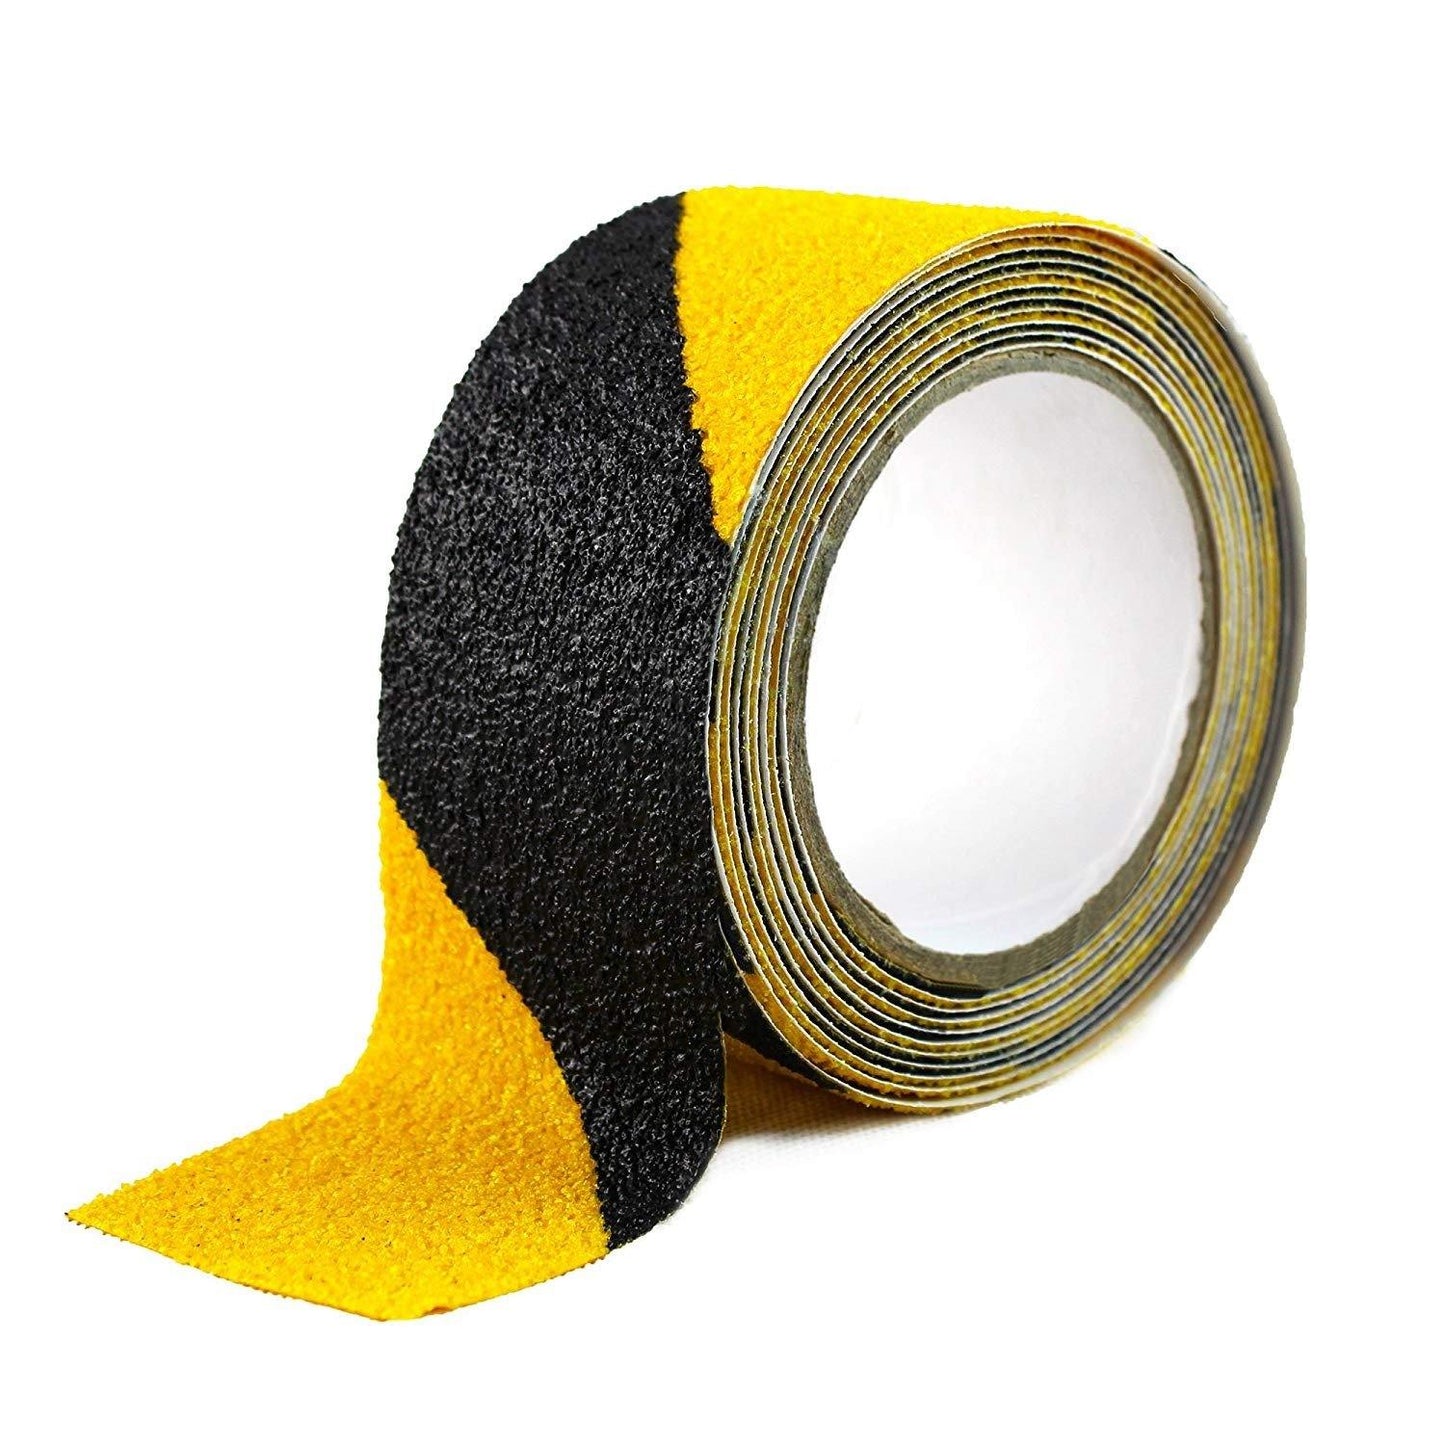 Anti Slip Tape- Black/Yellow (5M x 50MM) Anti Skid Tape- #Royalkart#anti skid adhesive tape